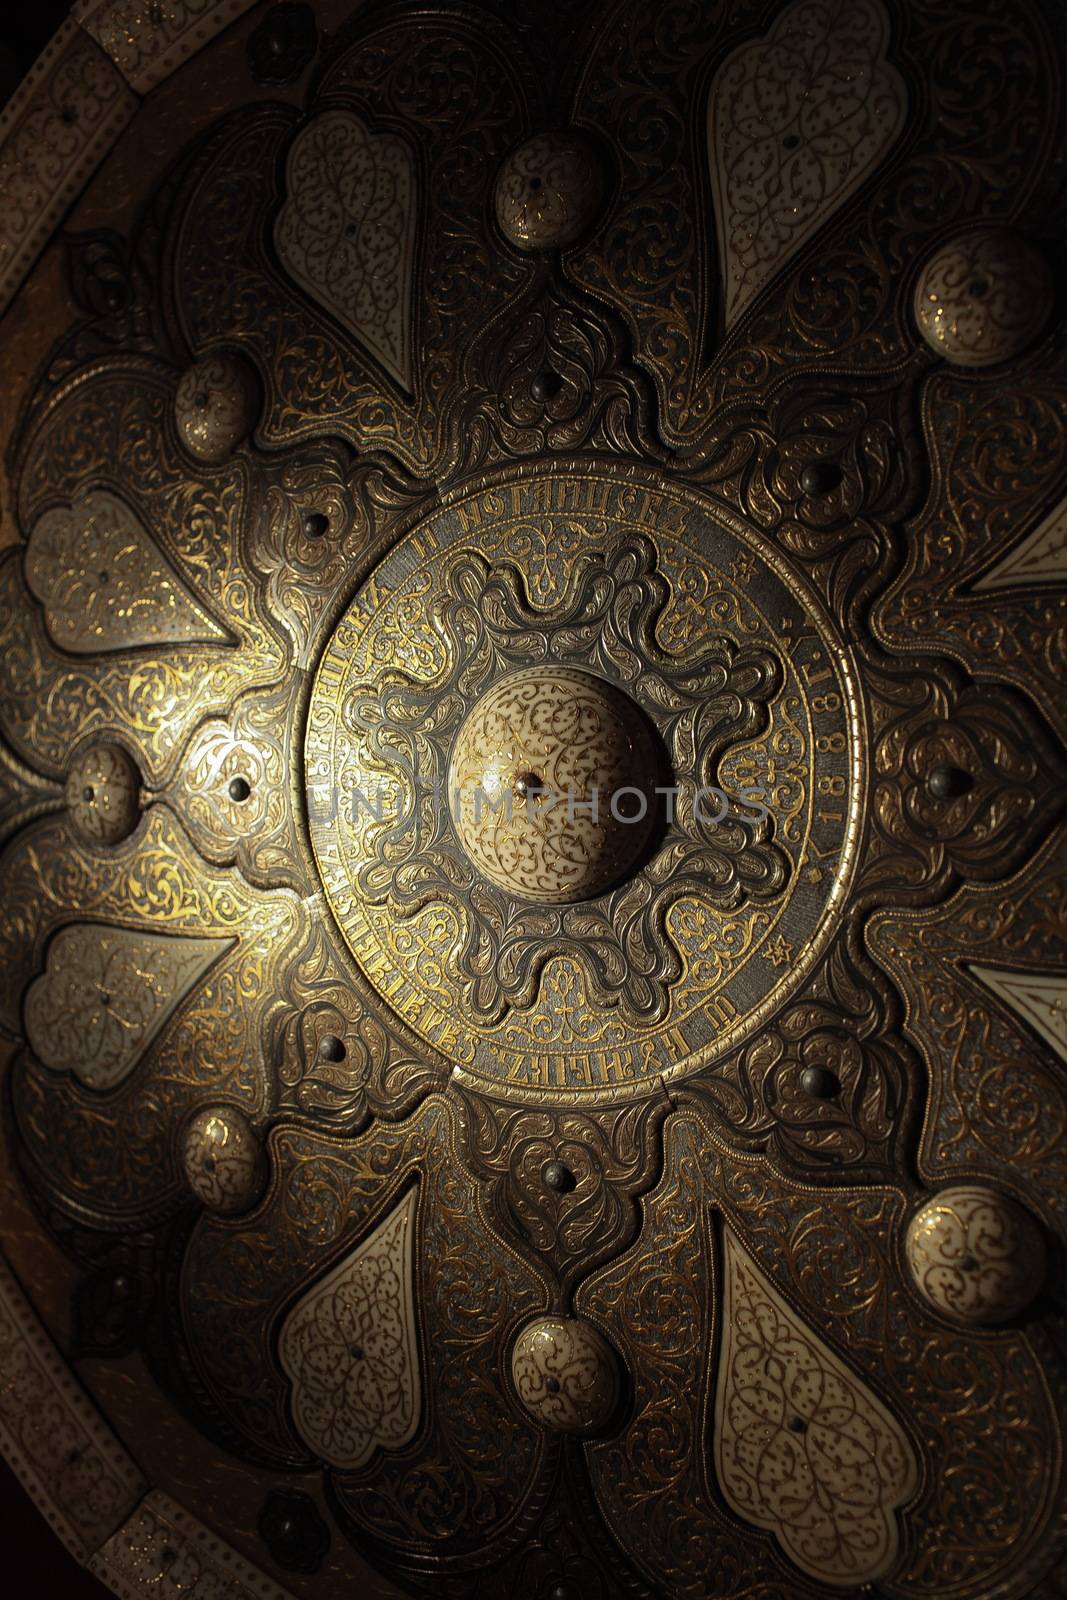 gold patterns on old armor by mrivserg